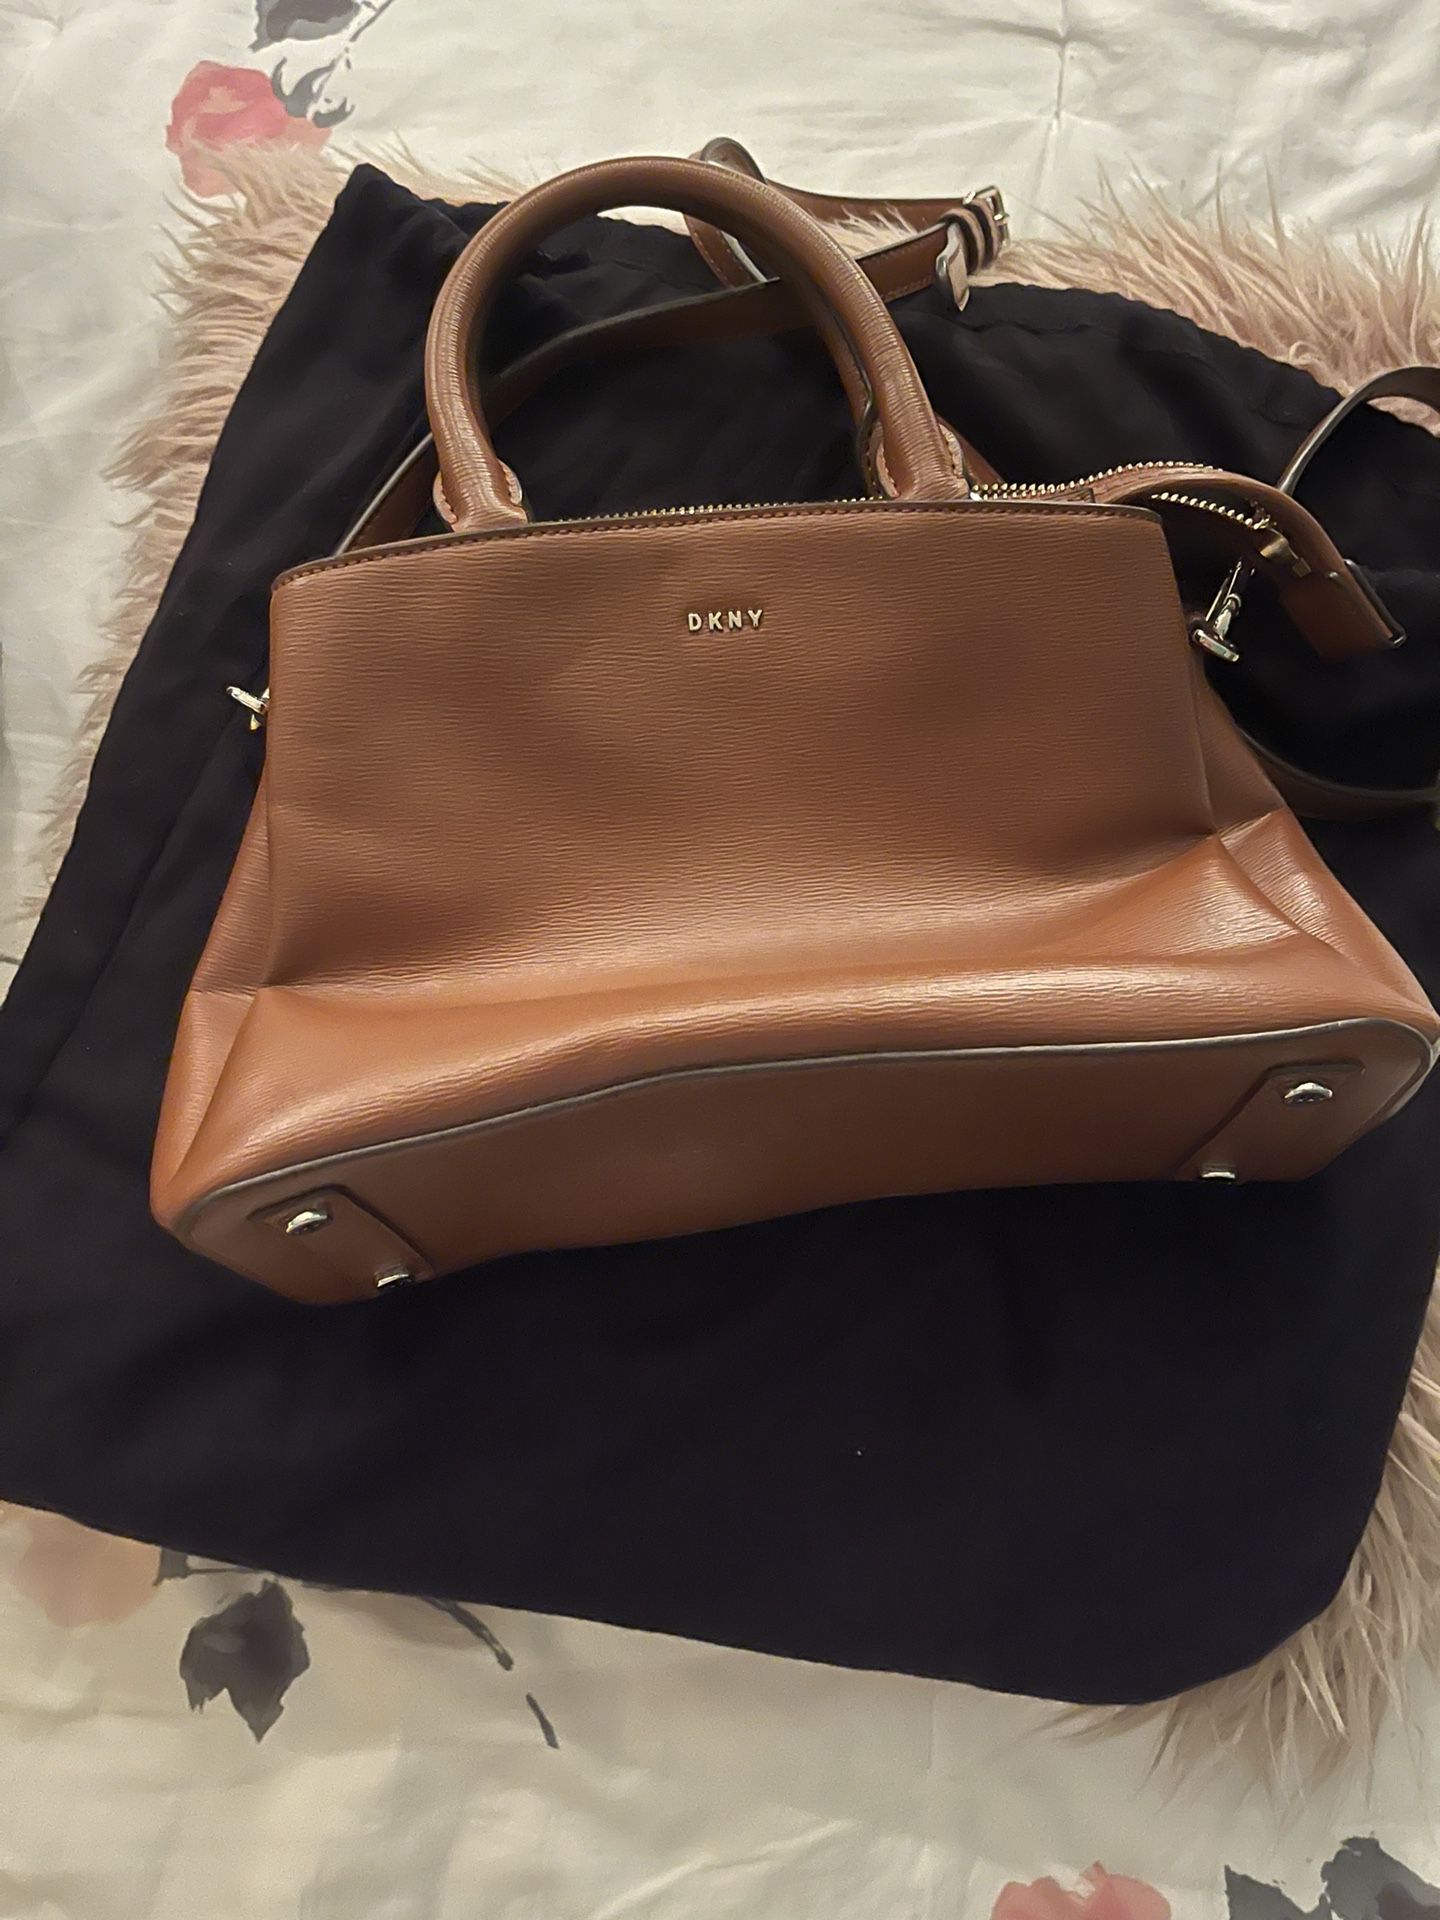 DKNY purse